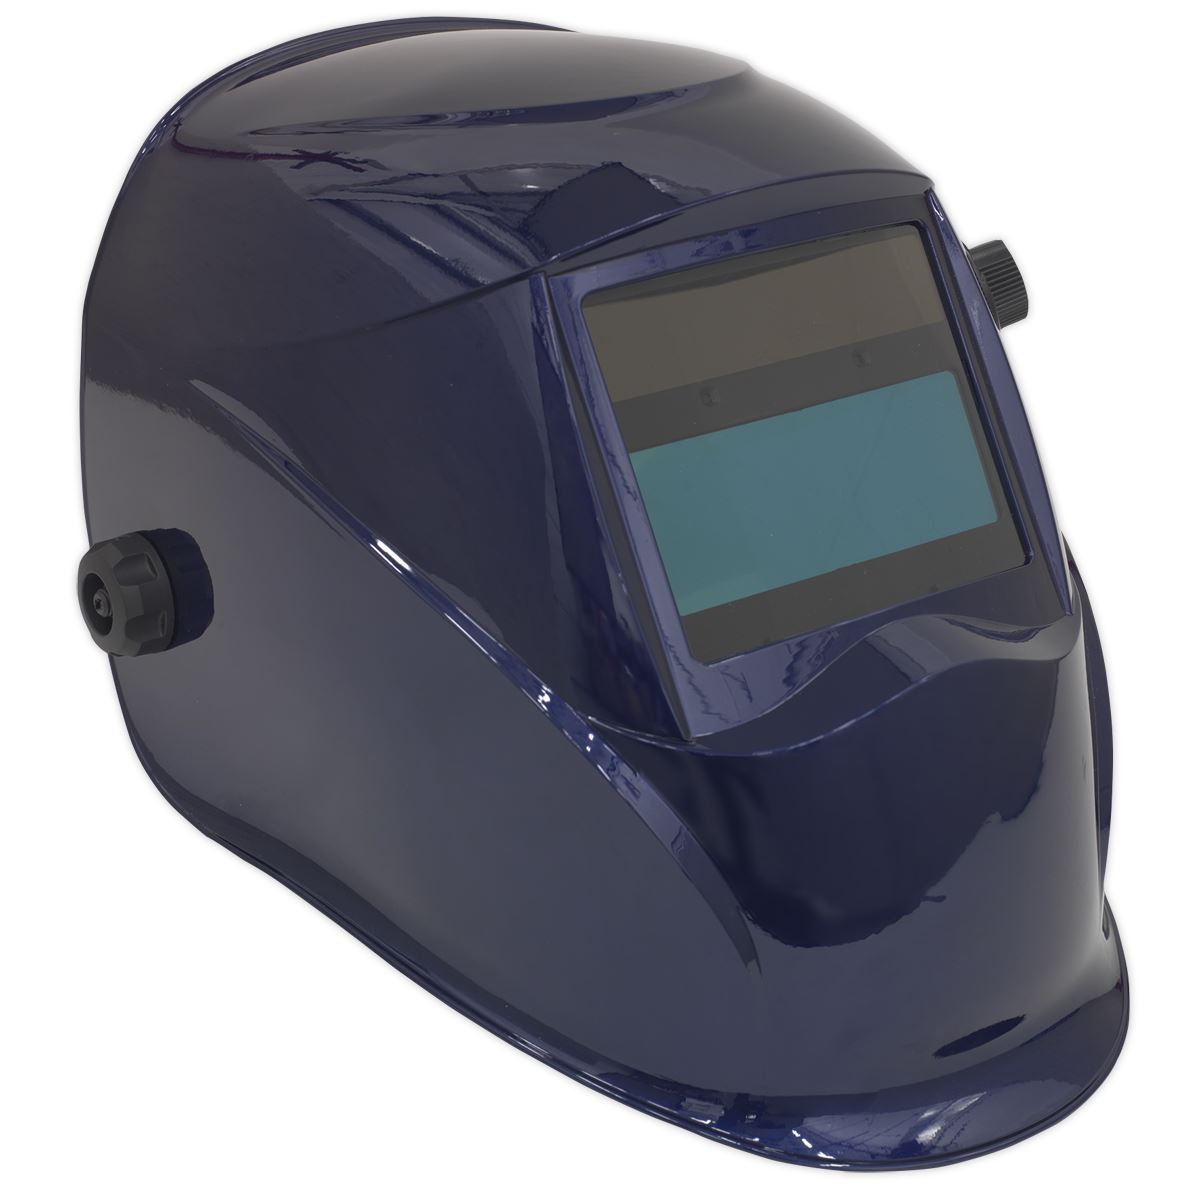 Sealey Welding Helmet Auto Darkening - Shade 9-13 - Blue